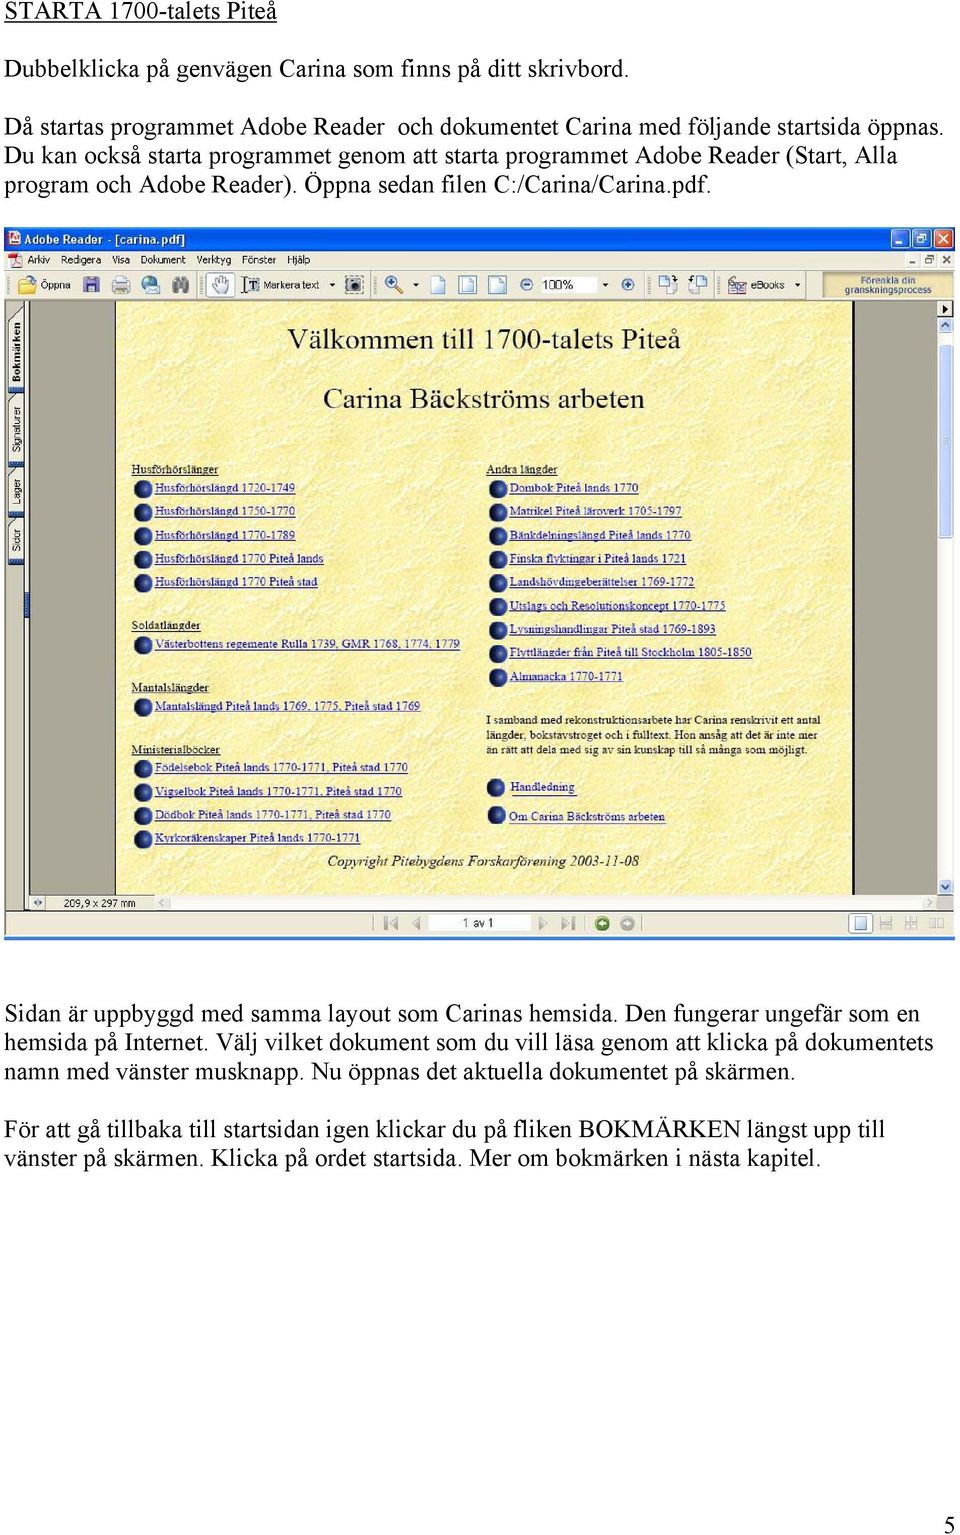 Sidan är uppbyggd med samma layout som Carinas hemsida. Den fungerar ungefär som en hemsida på Internet.